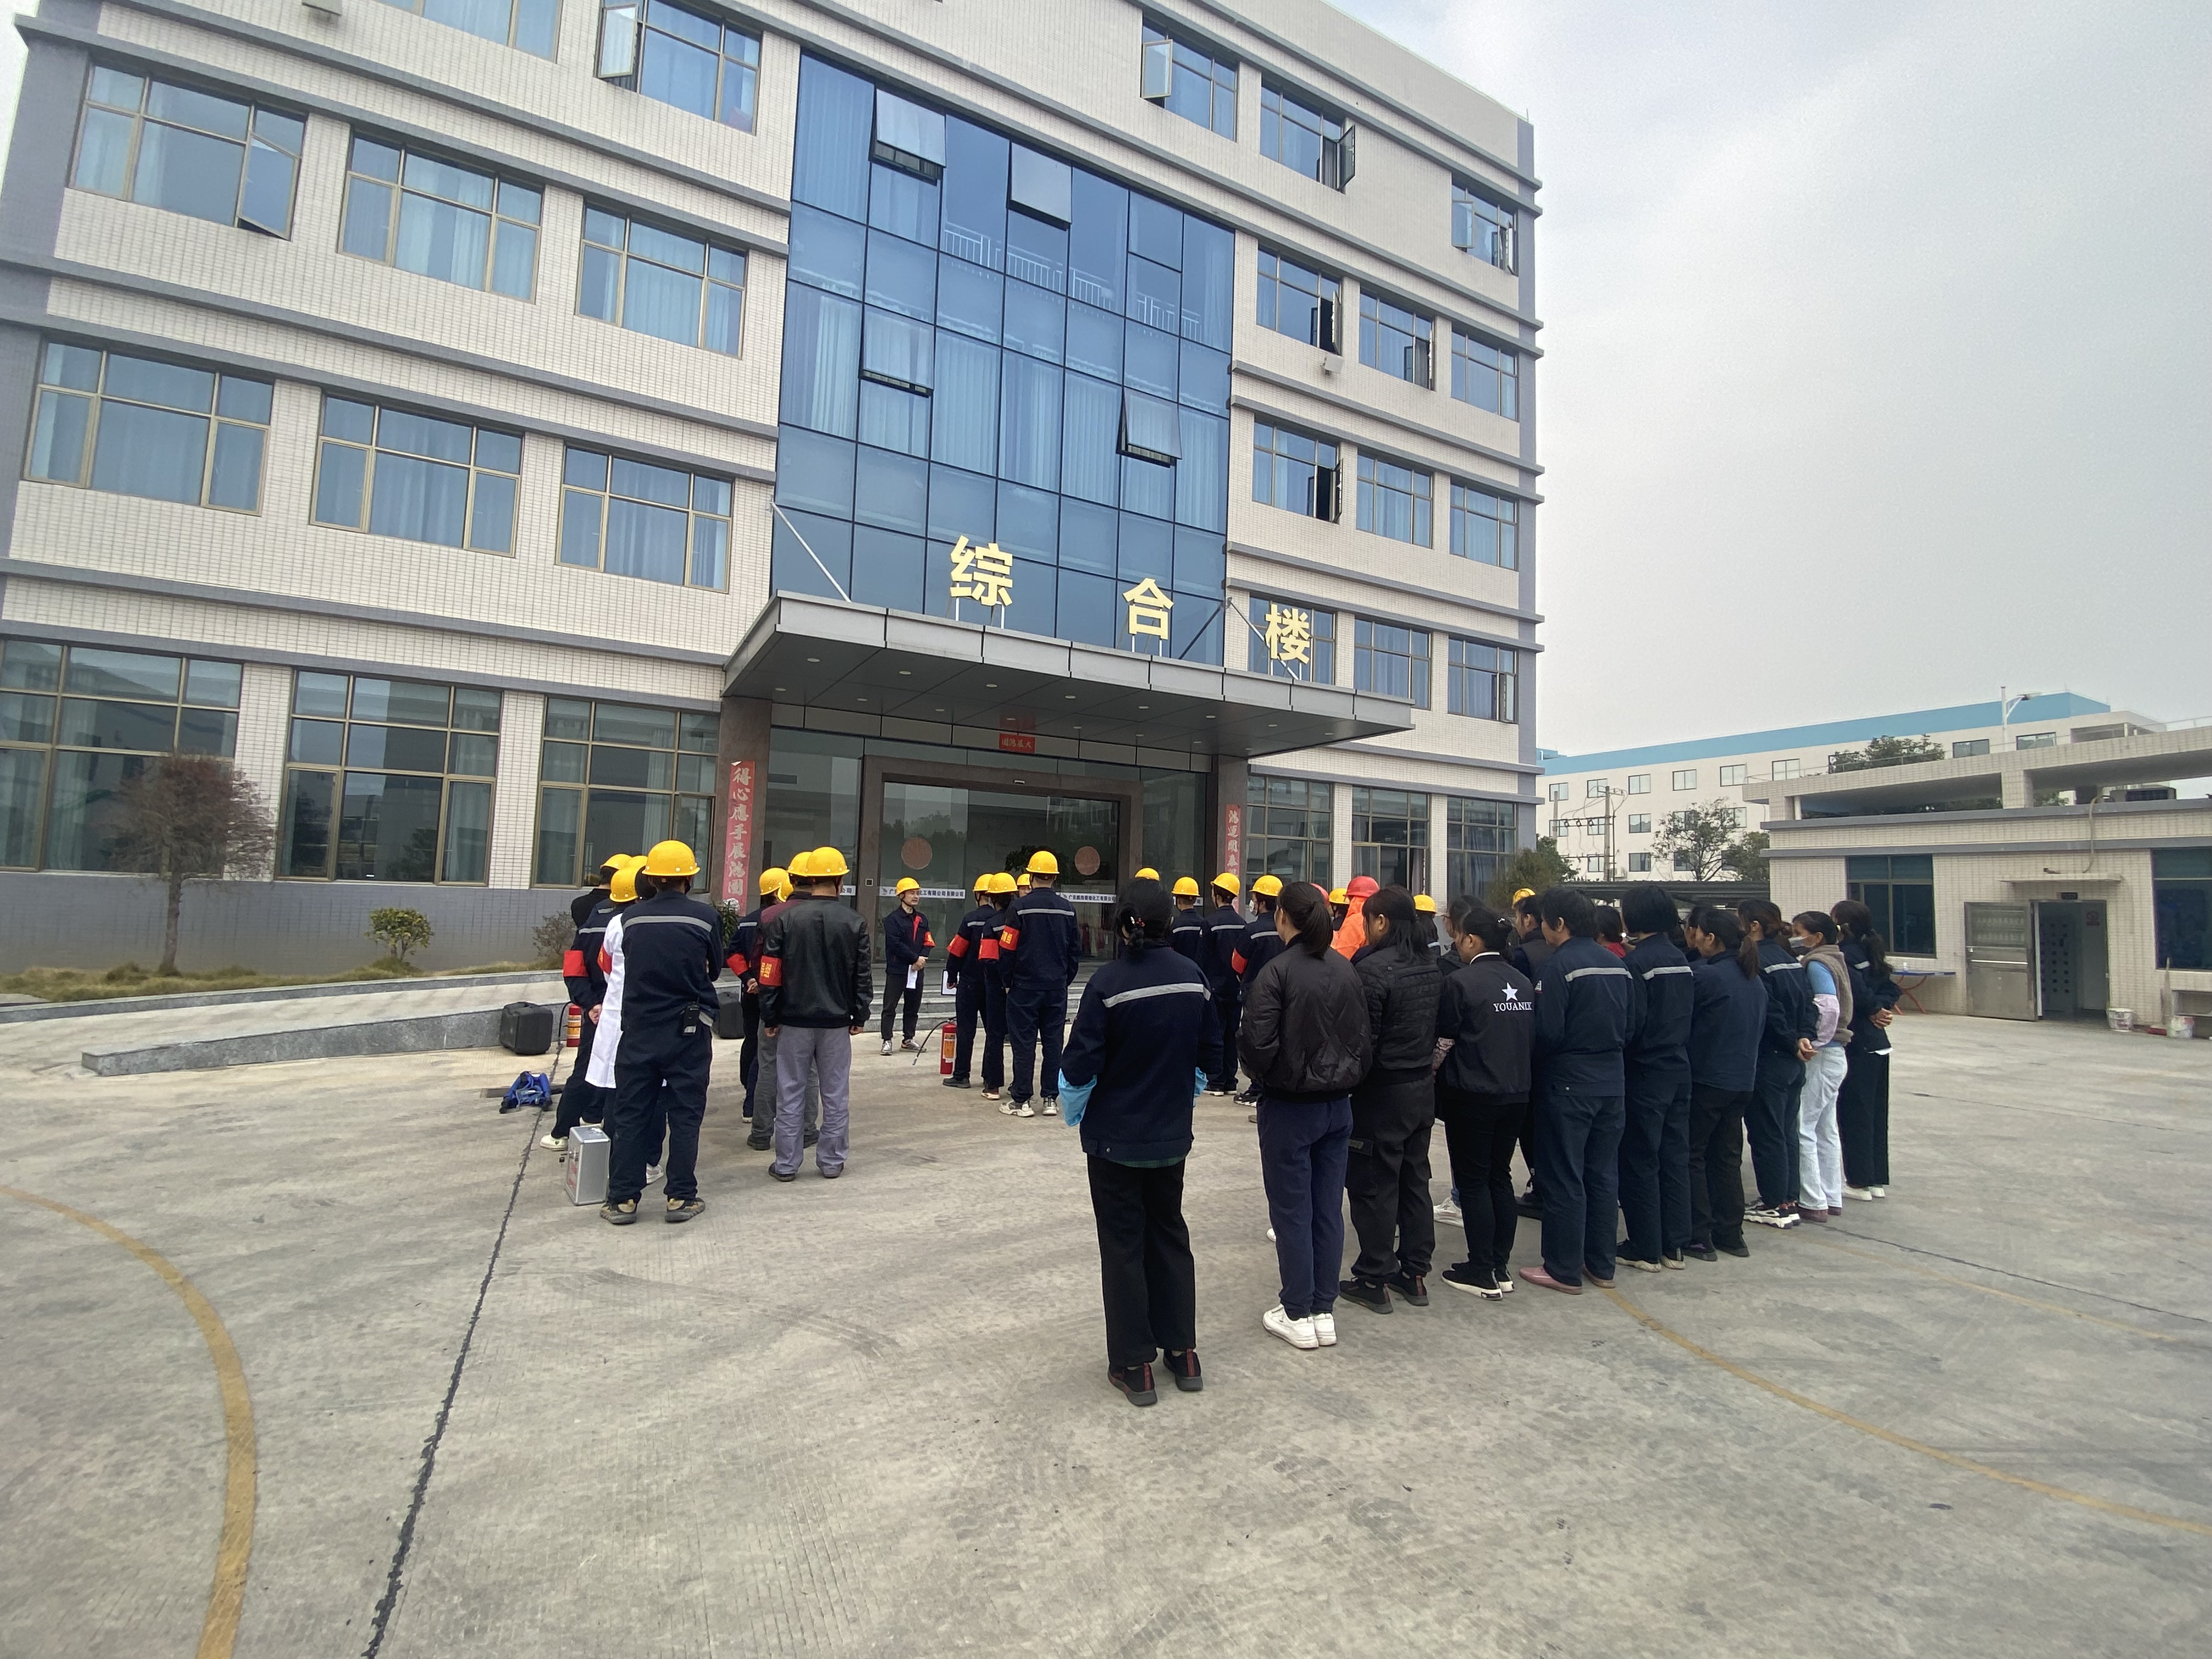 Pengwei丨Formal Fire Drill డిసెంబర్ 12, 2021న జరిగింది